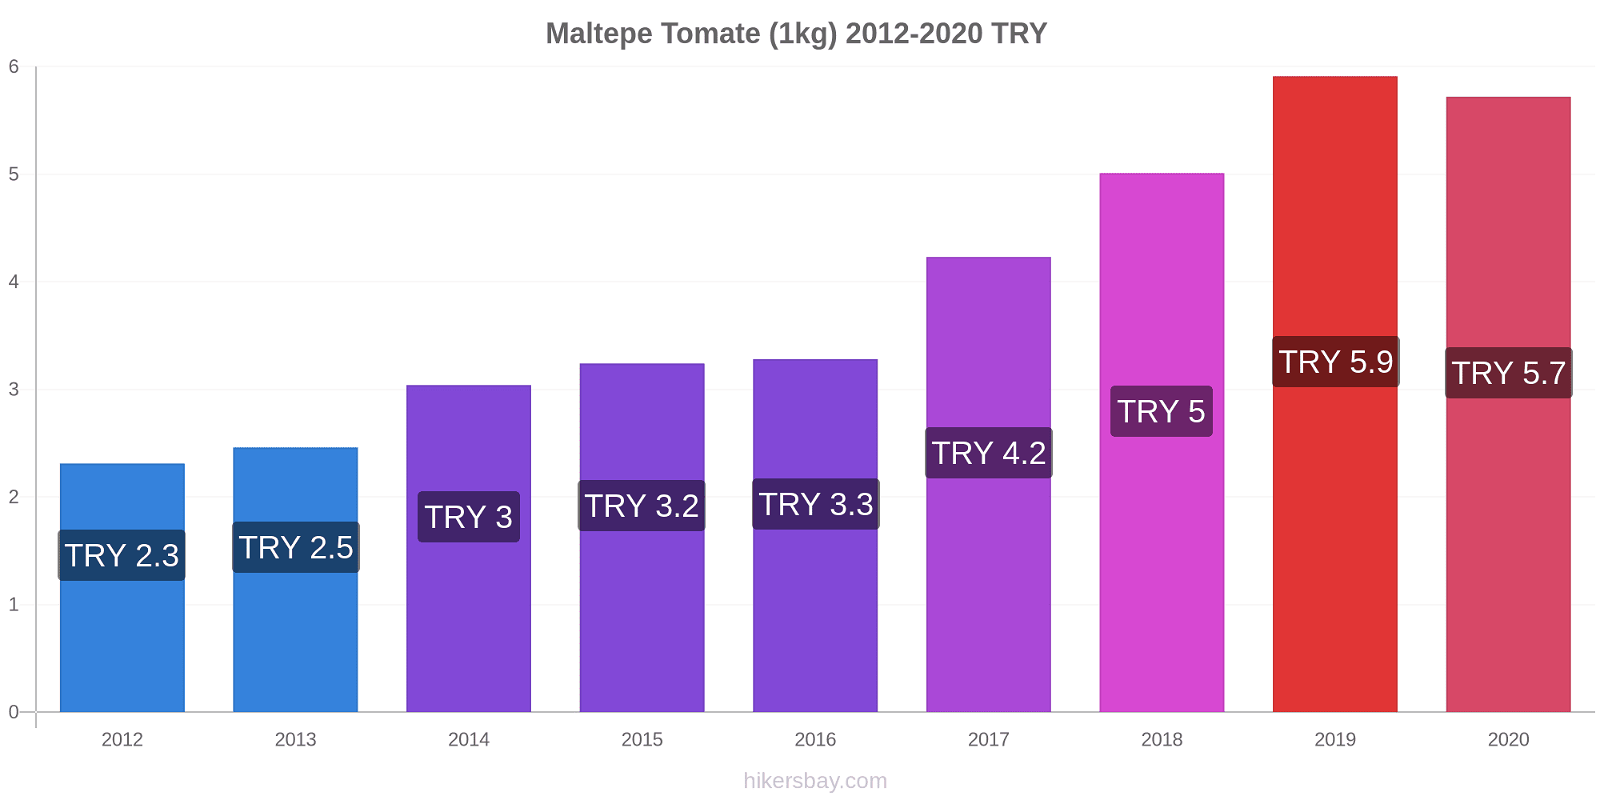 Maltepe changements de prix Tomate (1kg) hikersbay.com